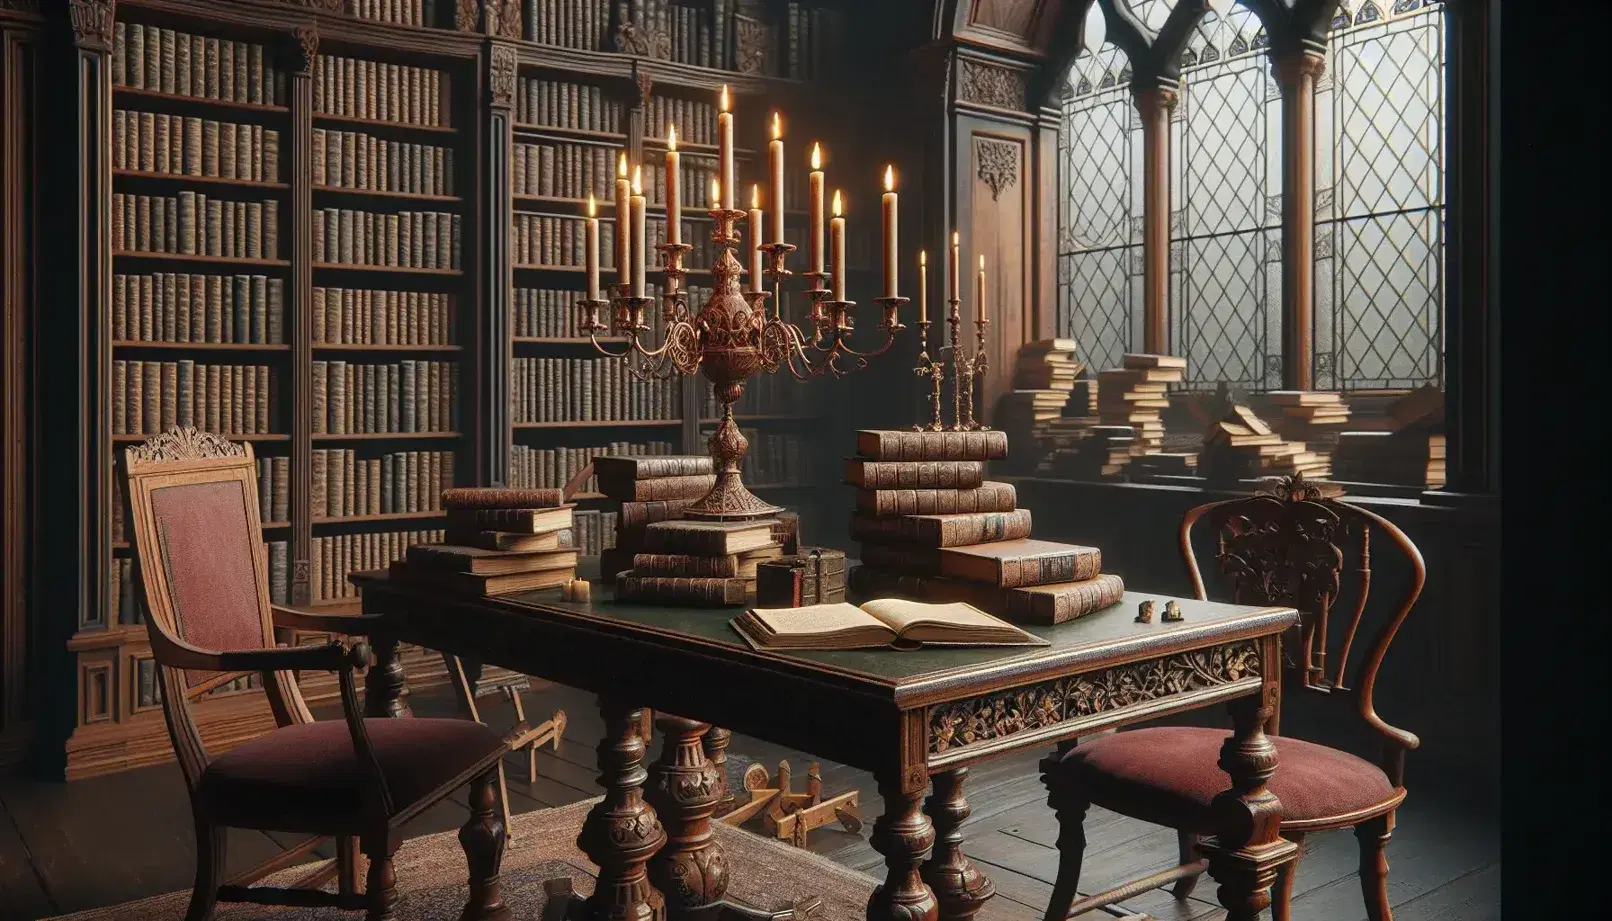 Biblioteca antigua con mesa de madera oscura y candelabro de bronce, sillas de terciopelo rojo, estanterías llenas de libros y alfombras persas.